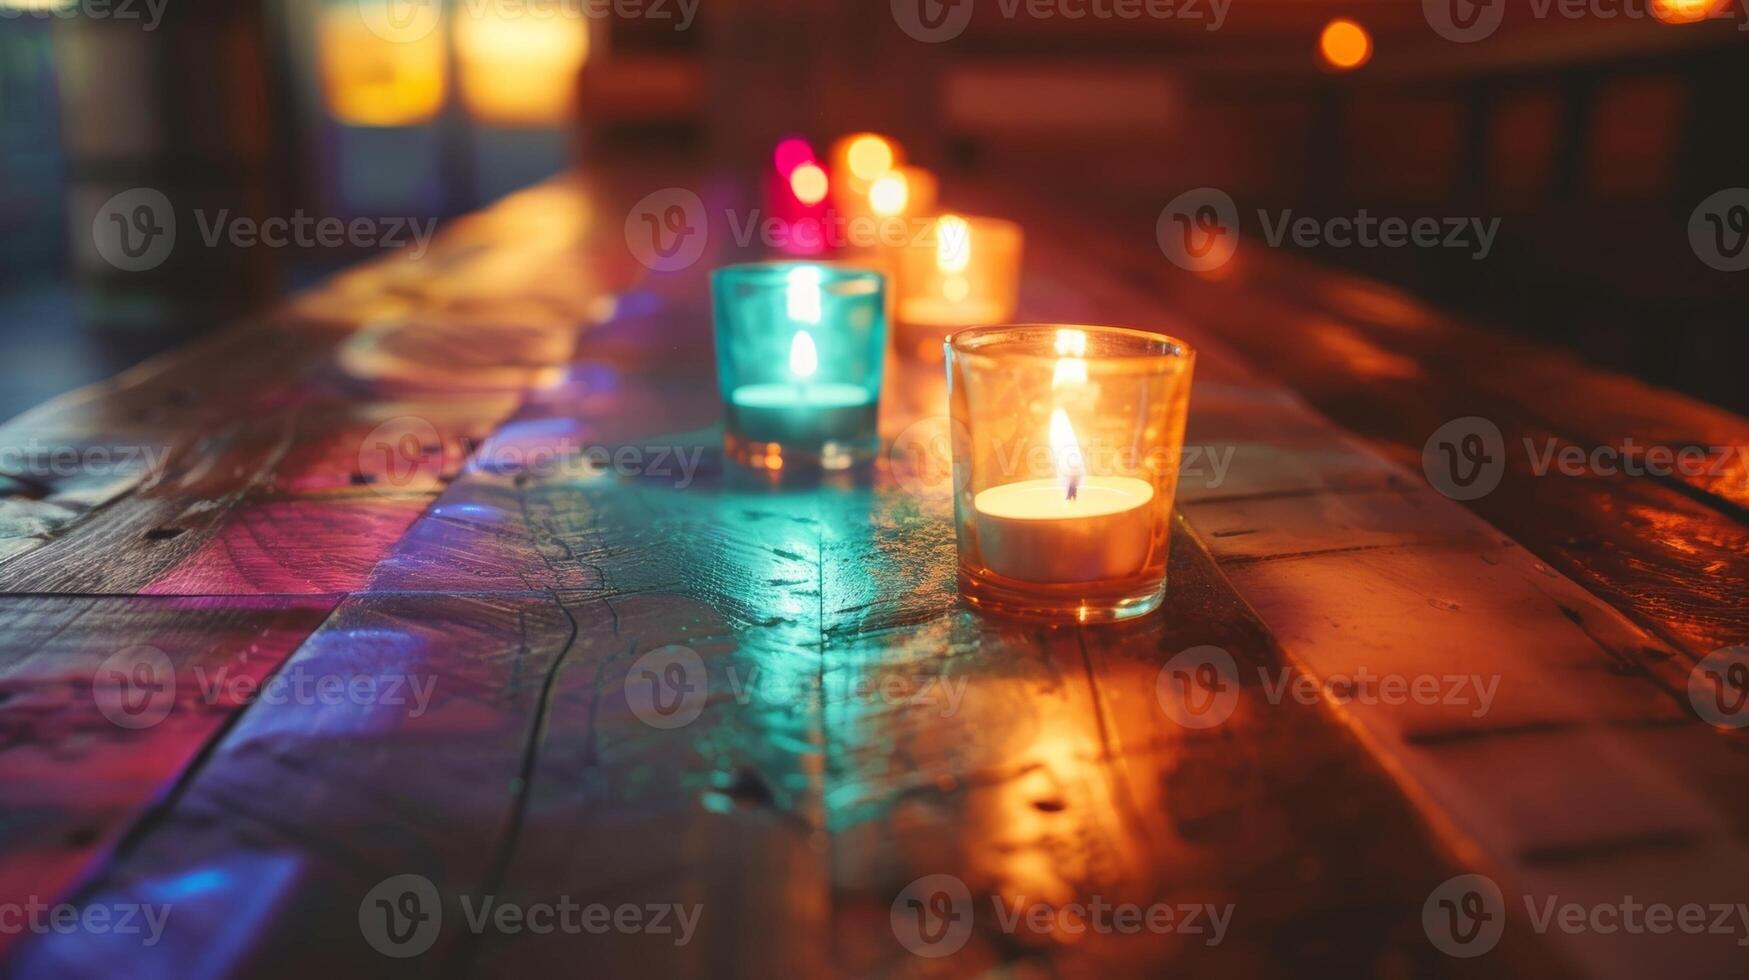 el bajo ligero de el velas yesos un suave resplandor en el oscuro de madera mesas haciendo el vistoso cruz Mira incluso más tentador. 2d plano dibujos animados foto